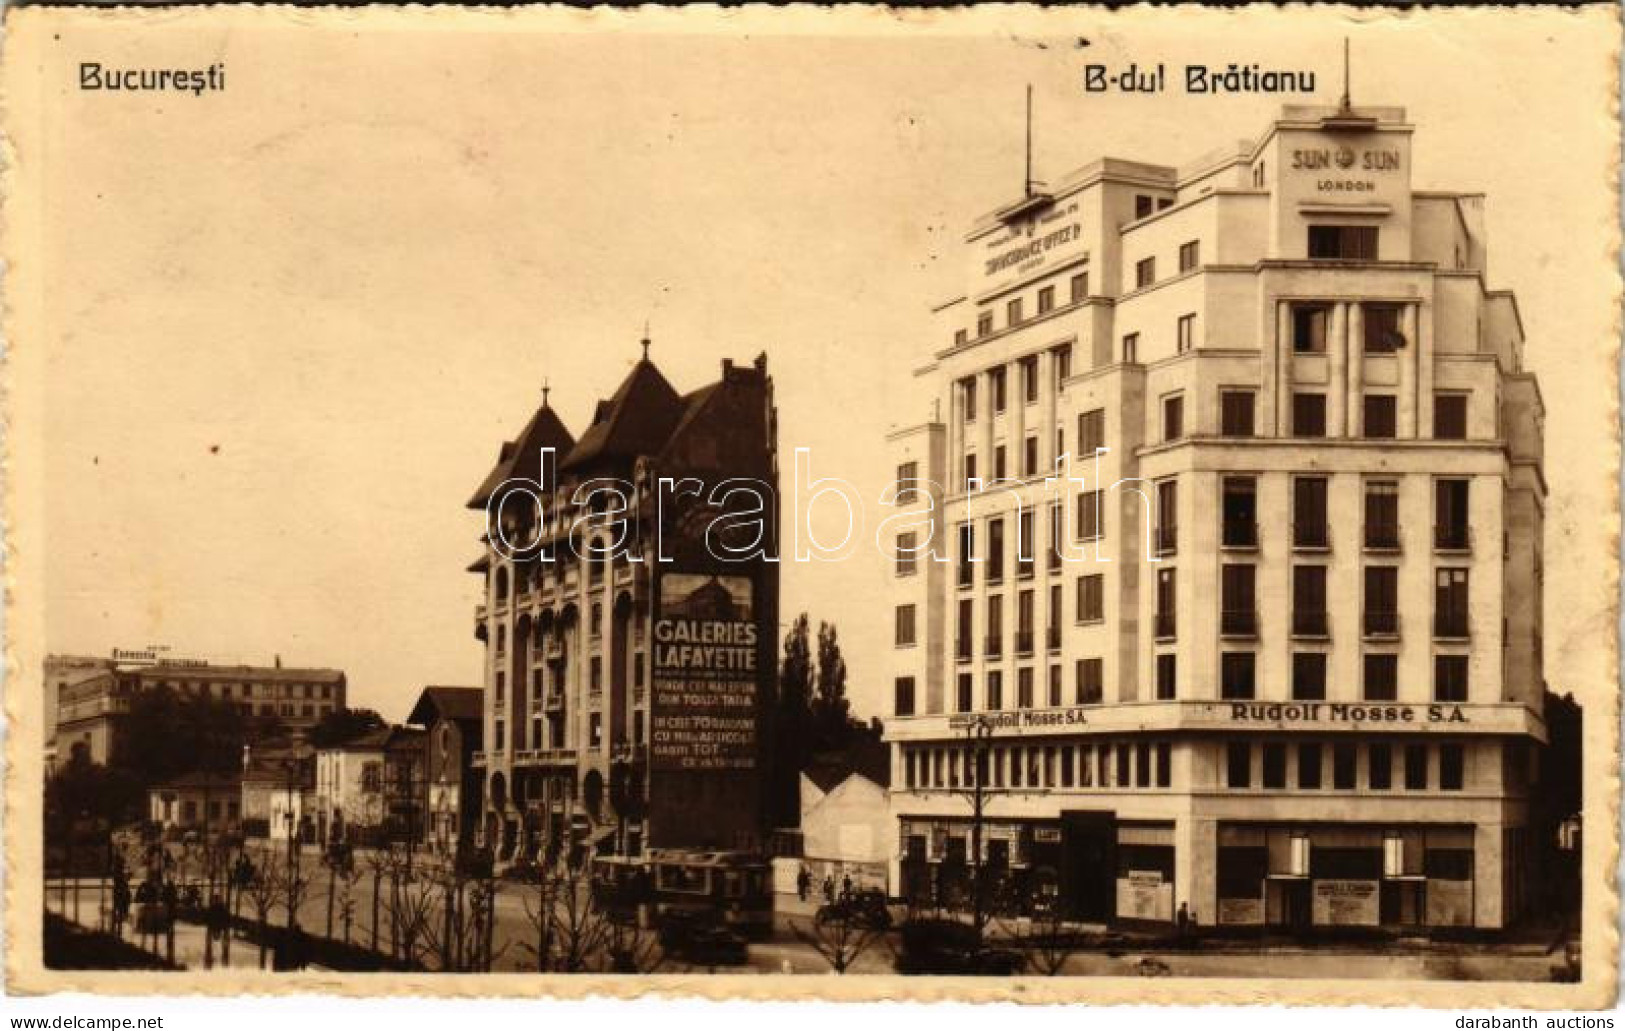 T2/T3 1933 Bucharest, Bukarest, Bucuresti, Bucuresci; B-dul Bratianu, Rudolf Mosse S.A., Sun Insurance Office Ltd. Londo - Non Classés